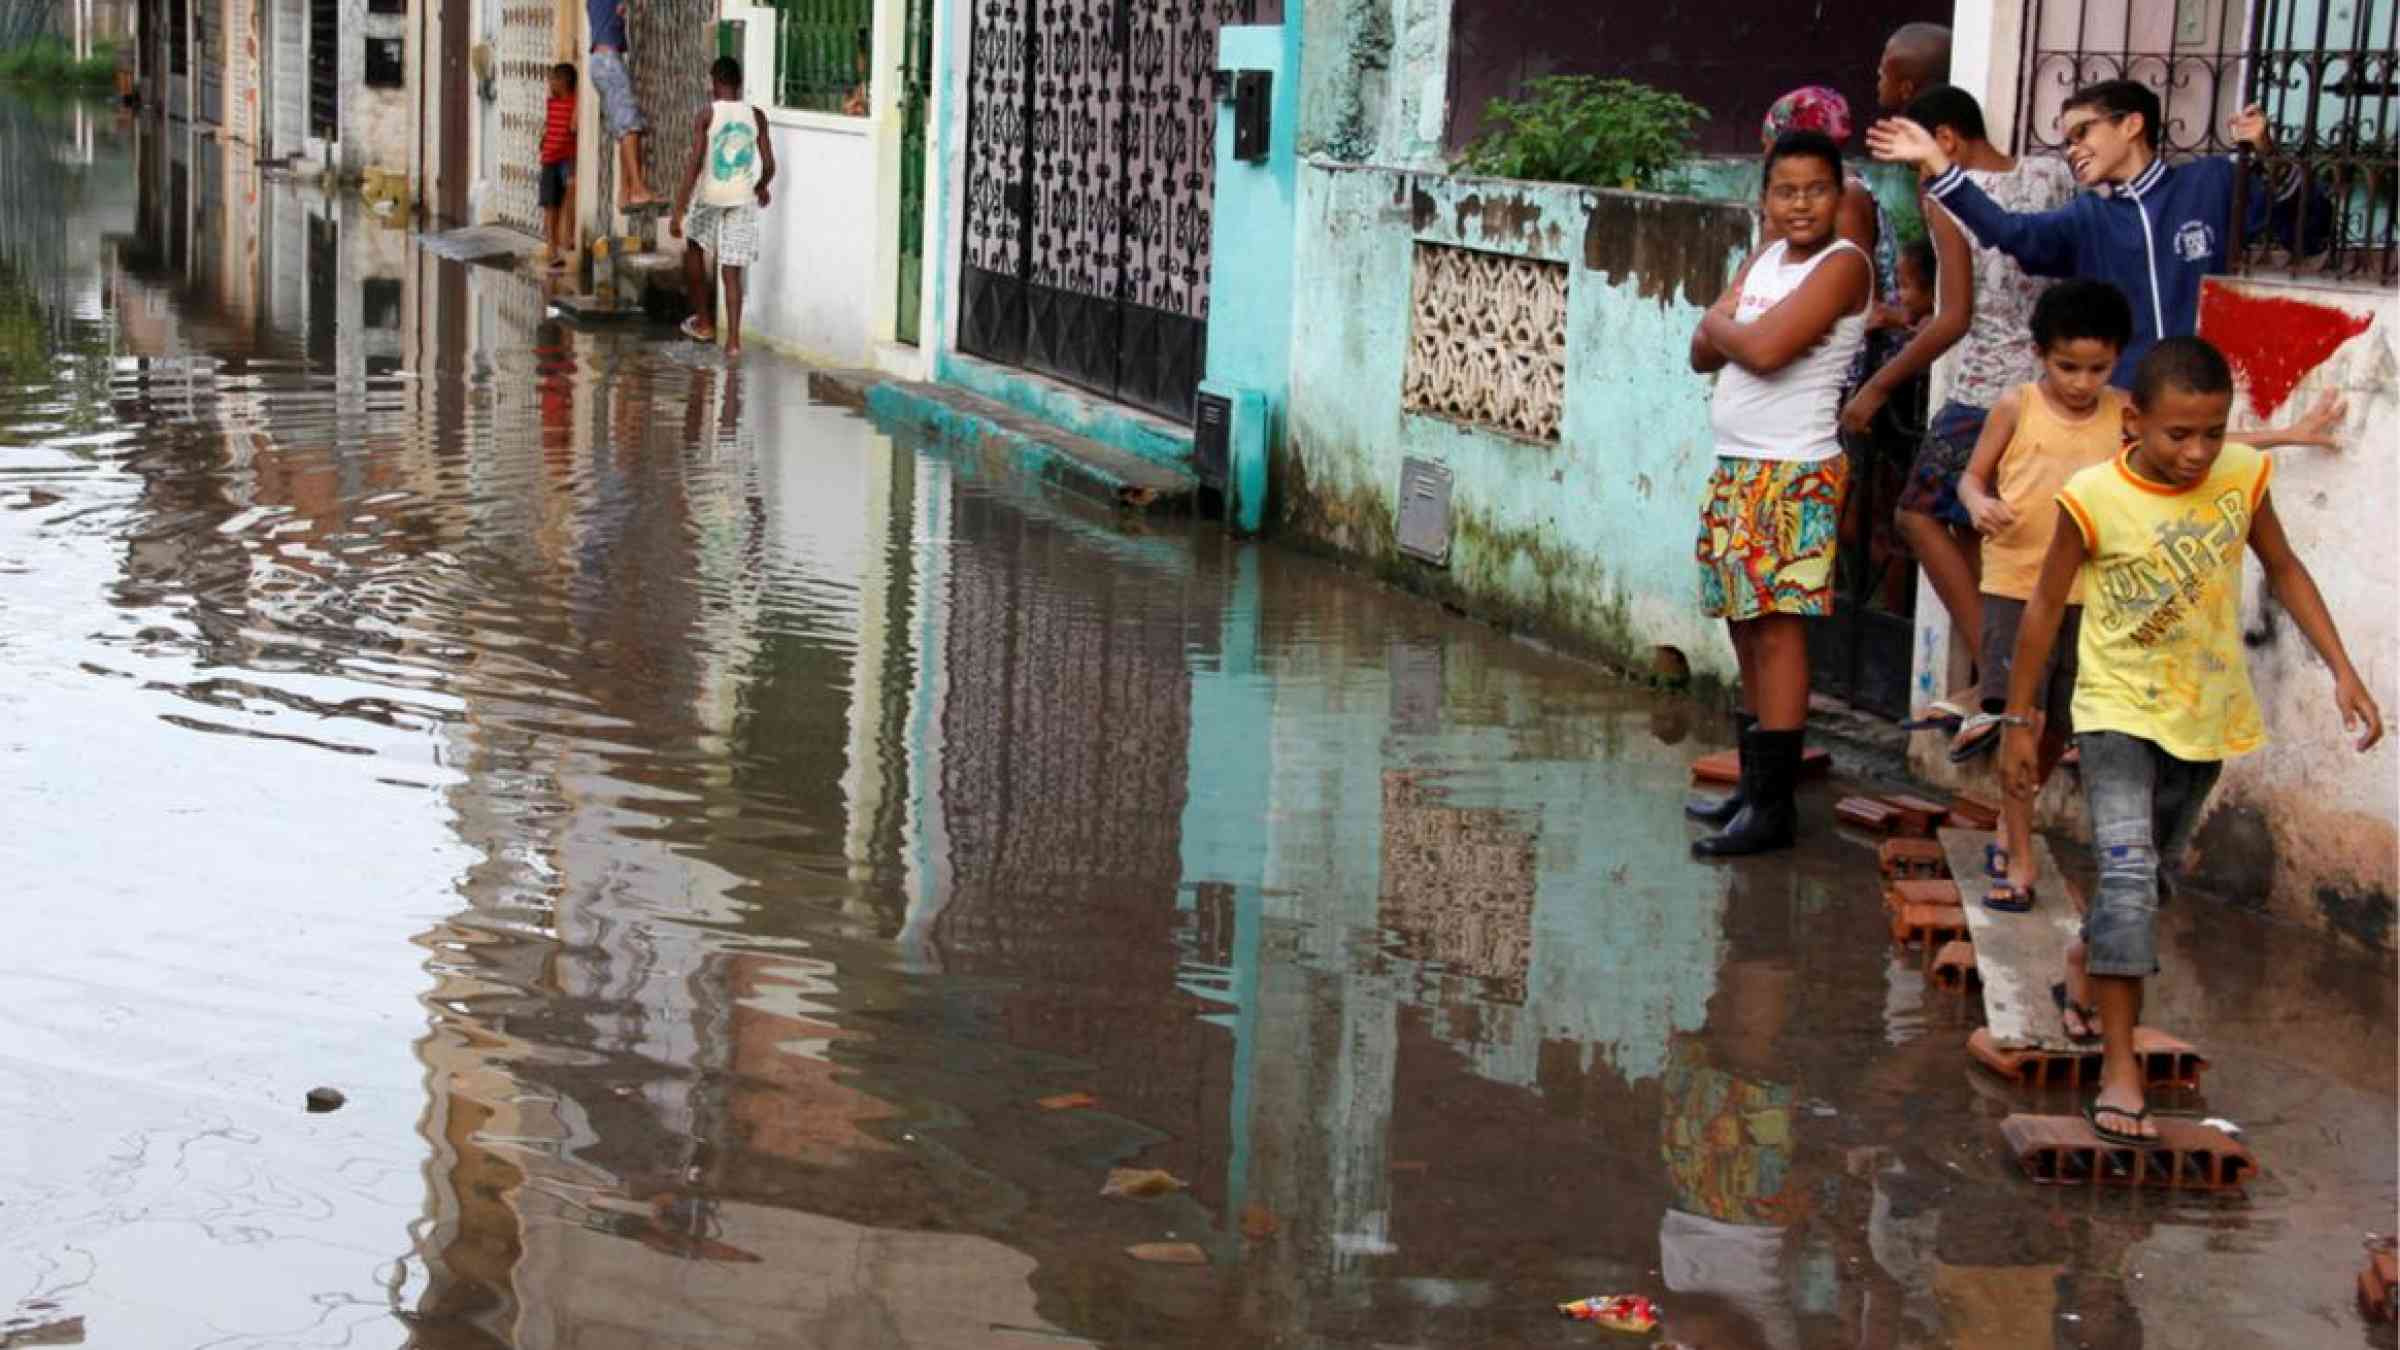 Floods in Bahia, Brazil (2013). Joa Souza/Shutterstock